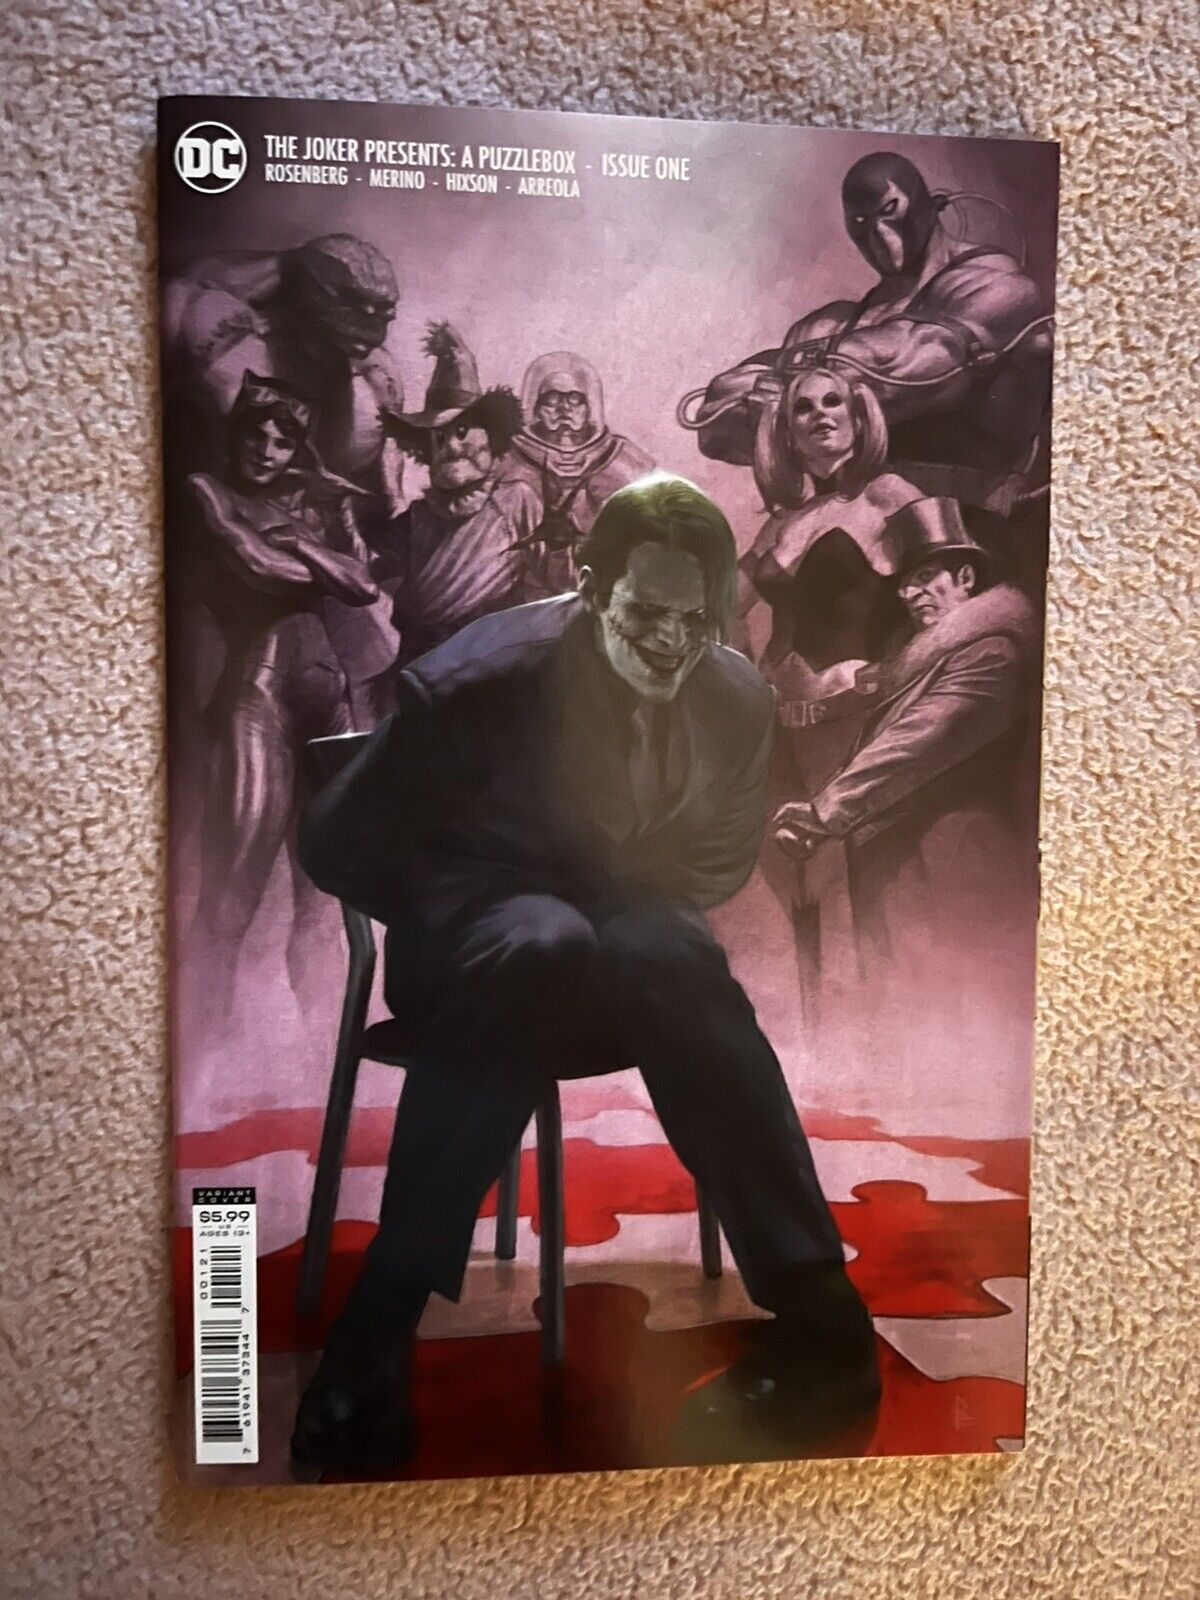 The Joker Presents: A Puzzlebox #1 (DC Comics, 2021) Variant Cover UNREAD